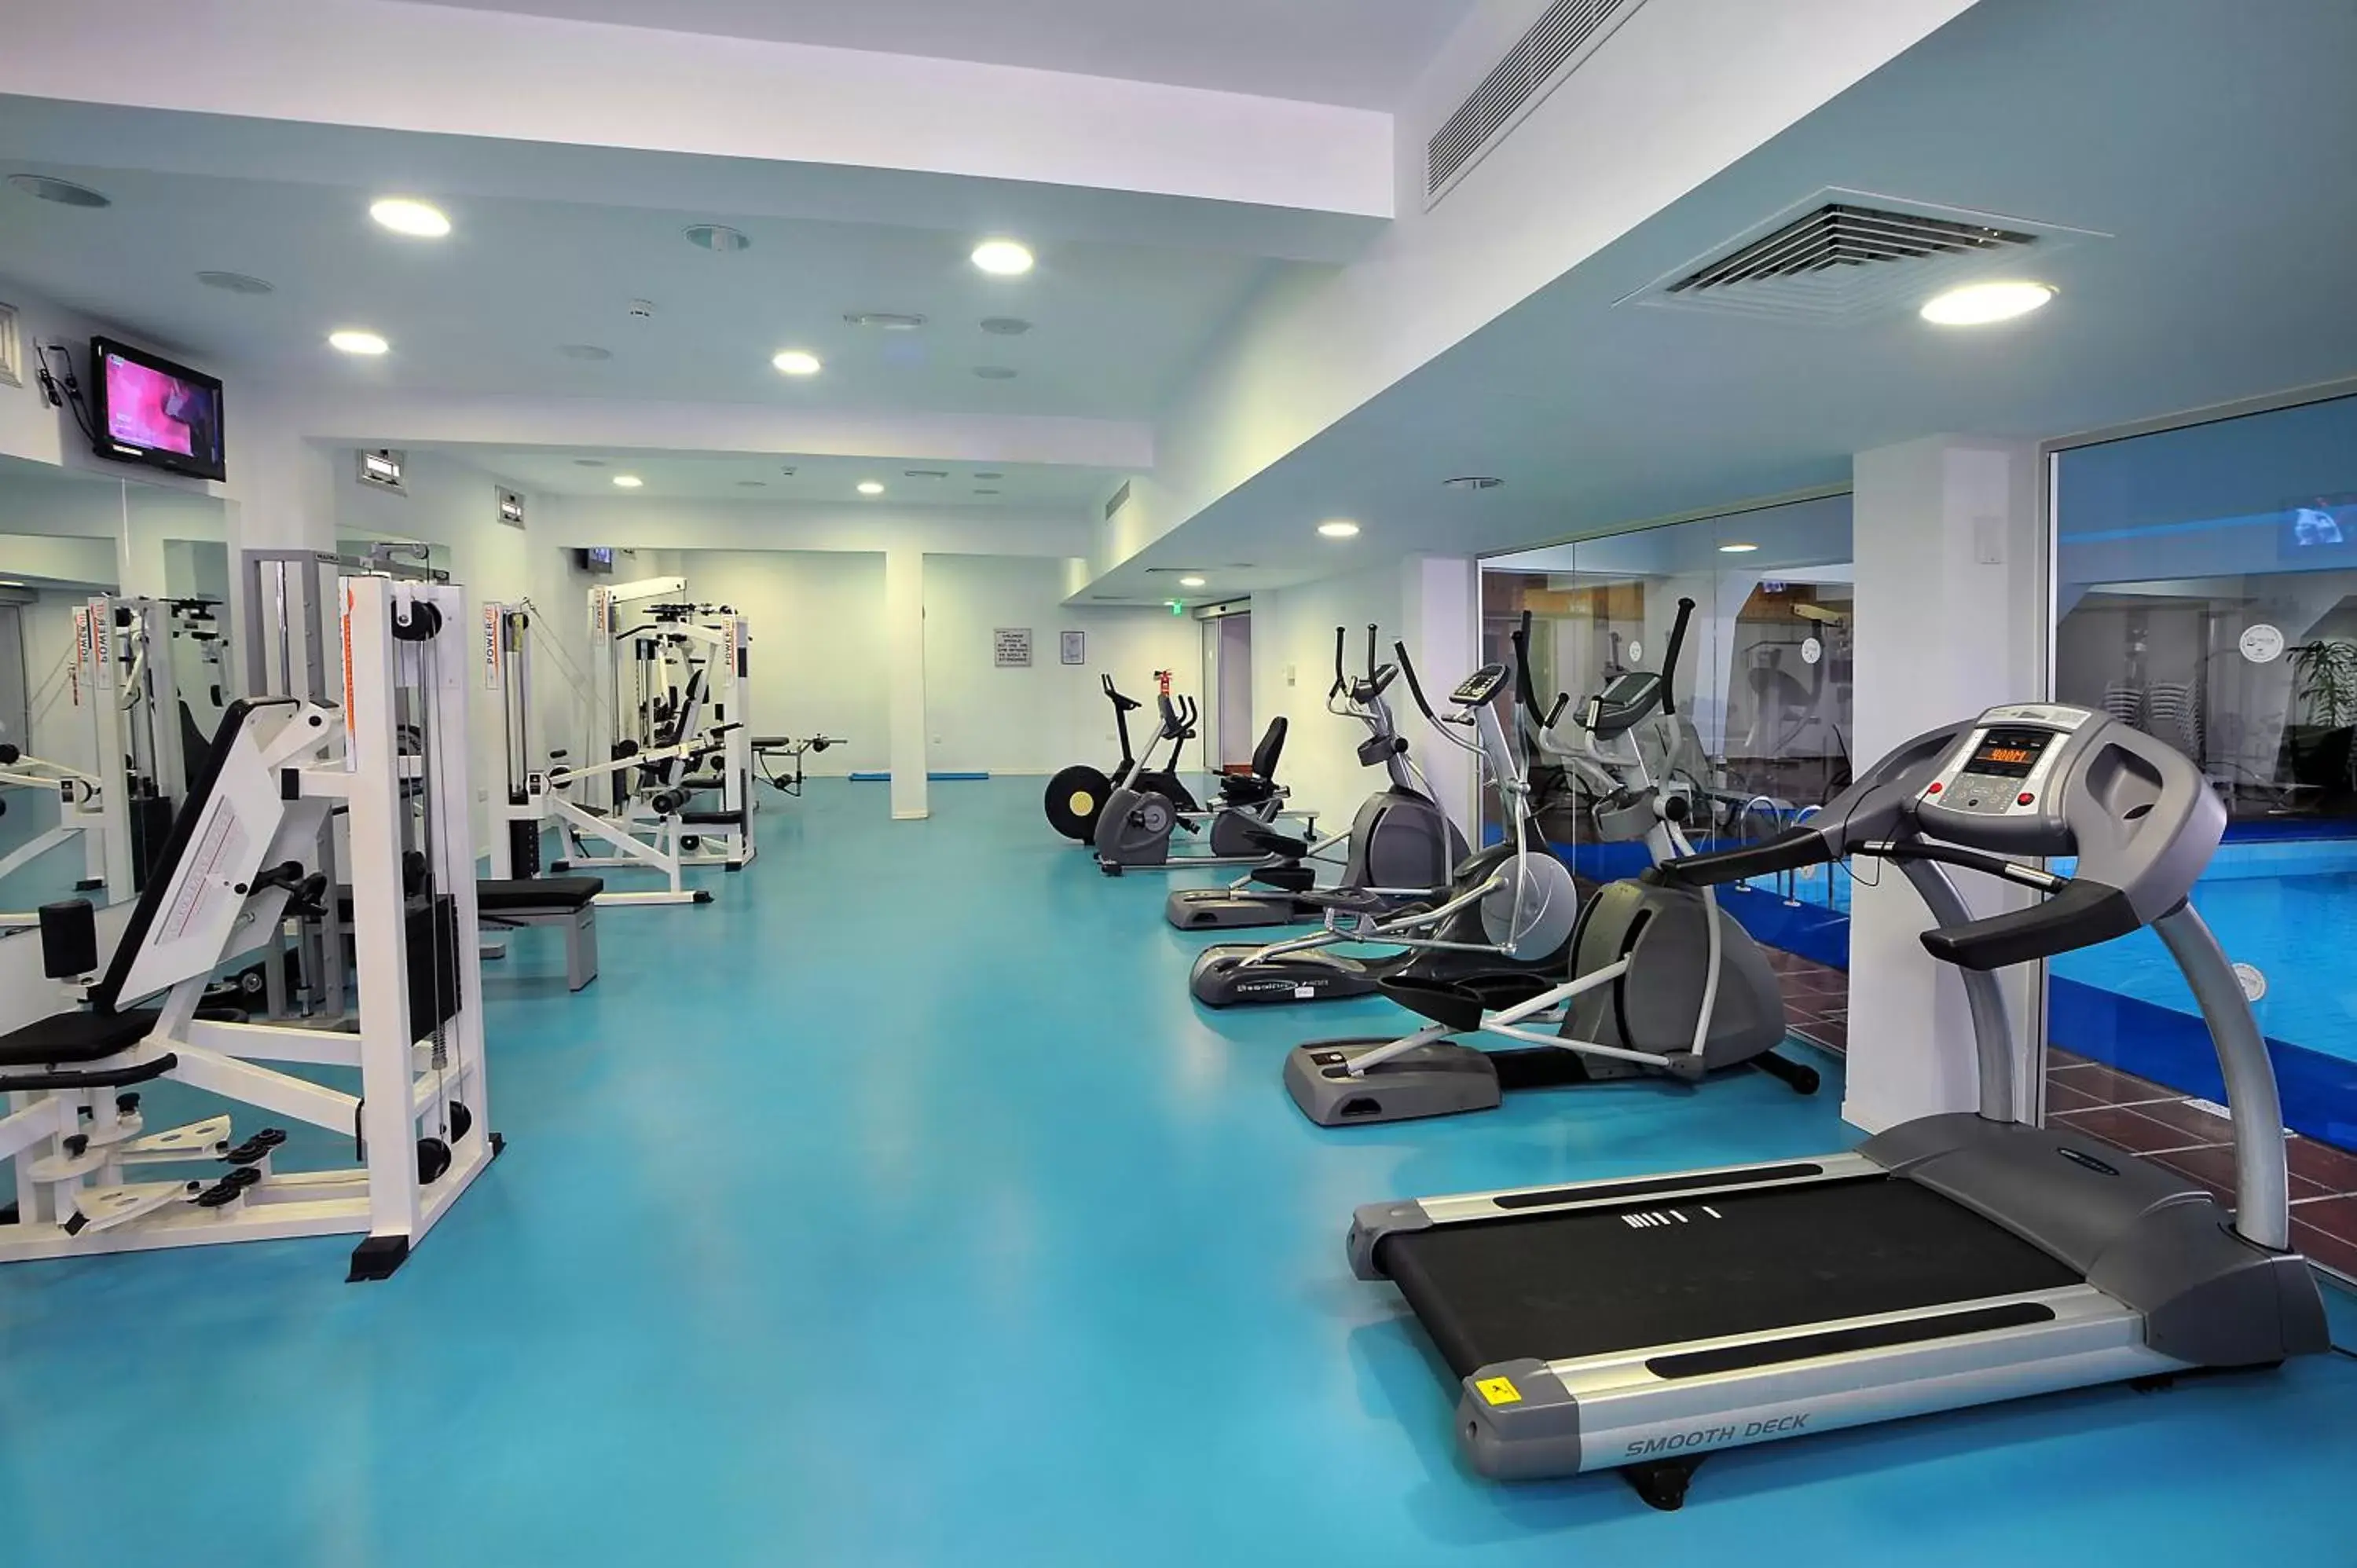 Fitness centre/facilities, Fitness Center/Facilities in Nestor Hotel